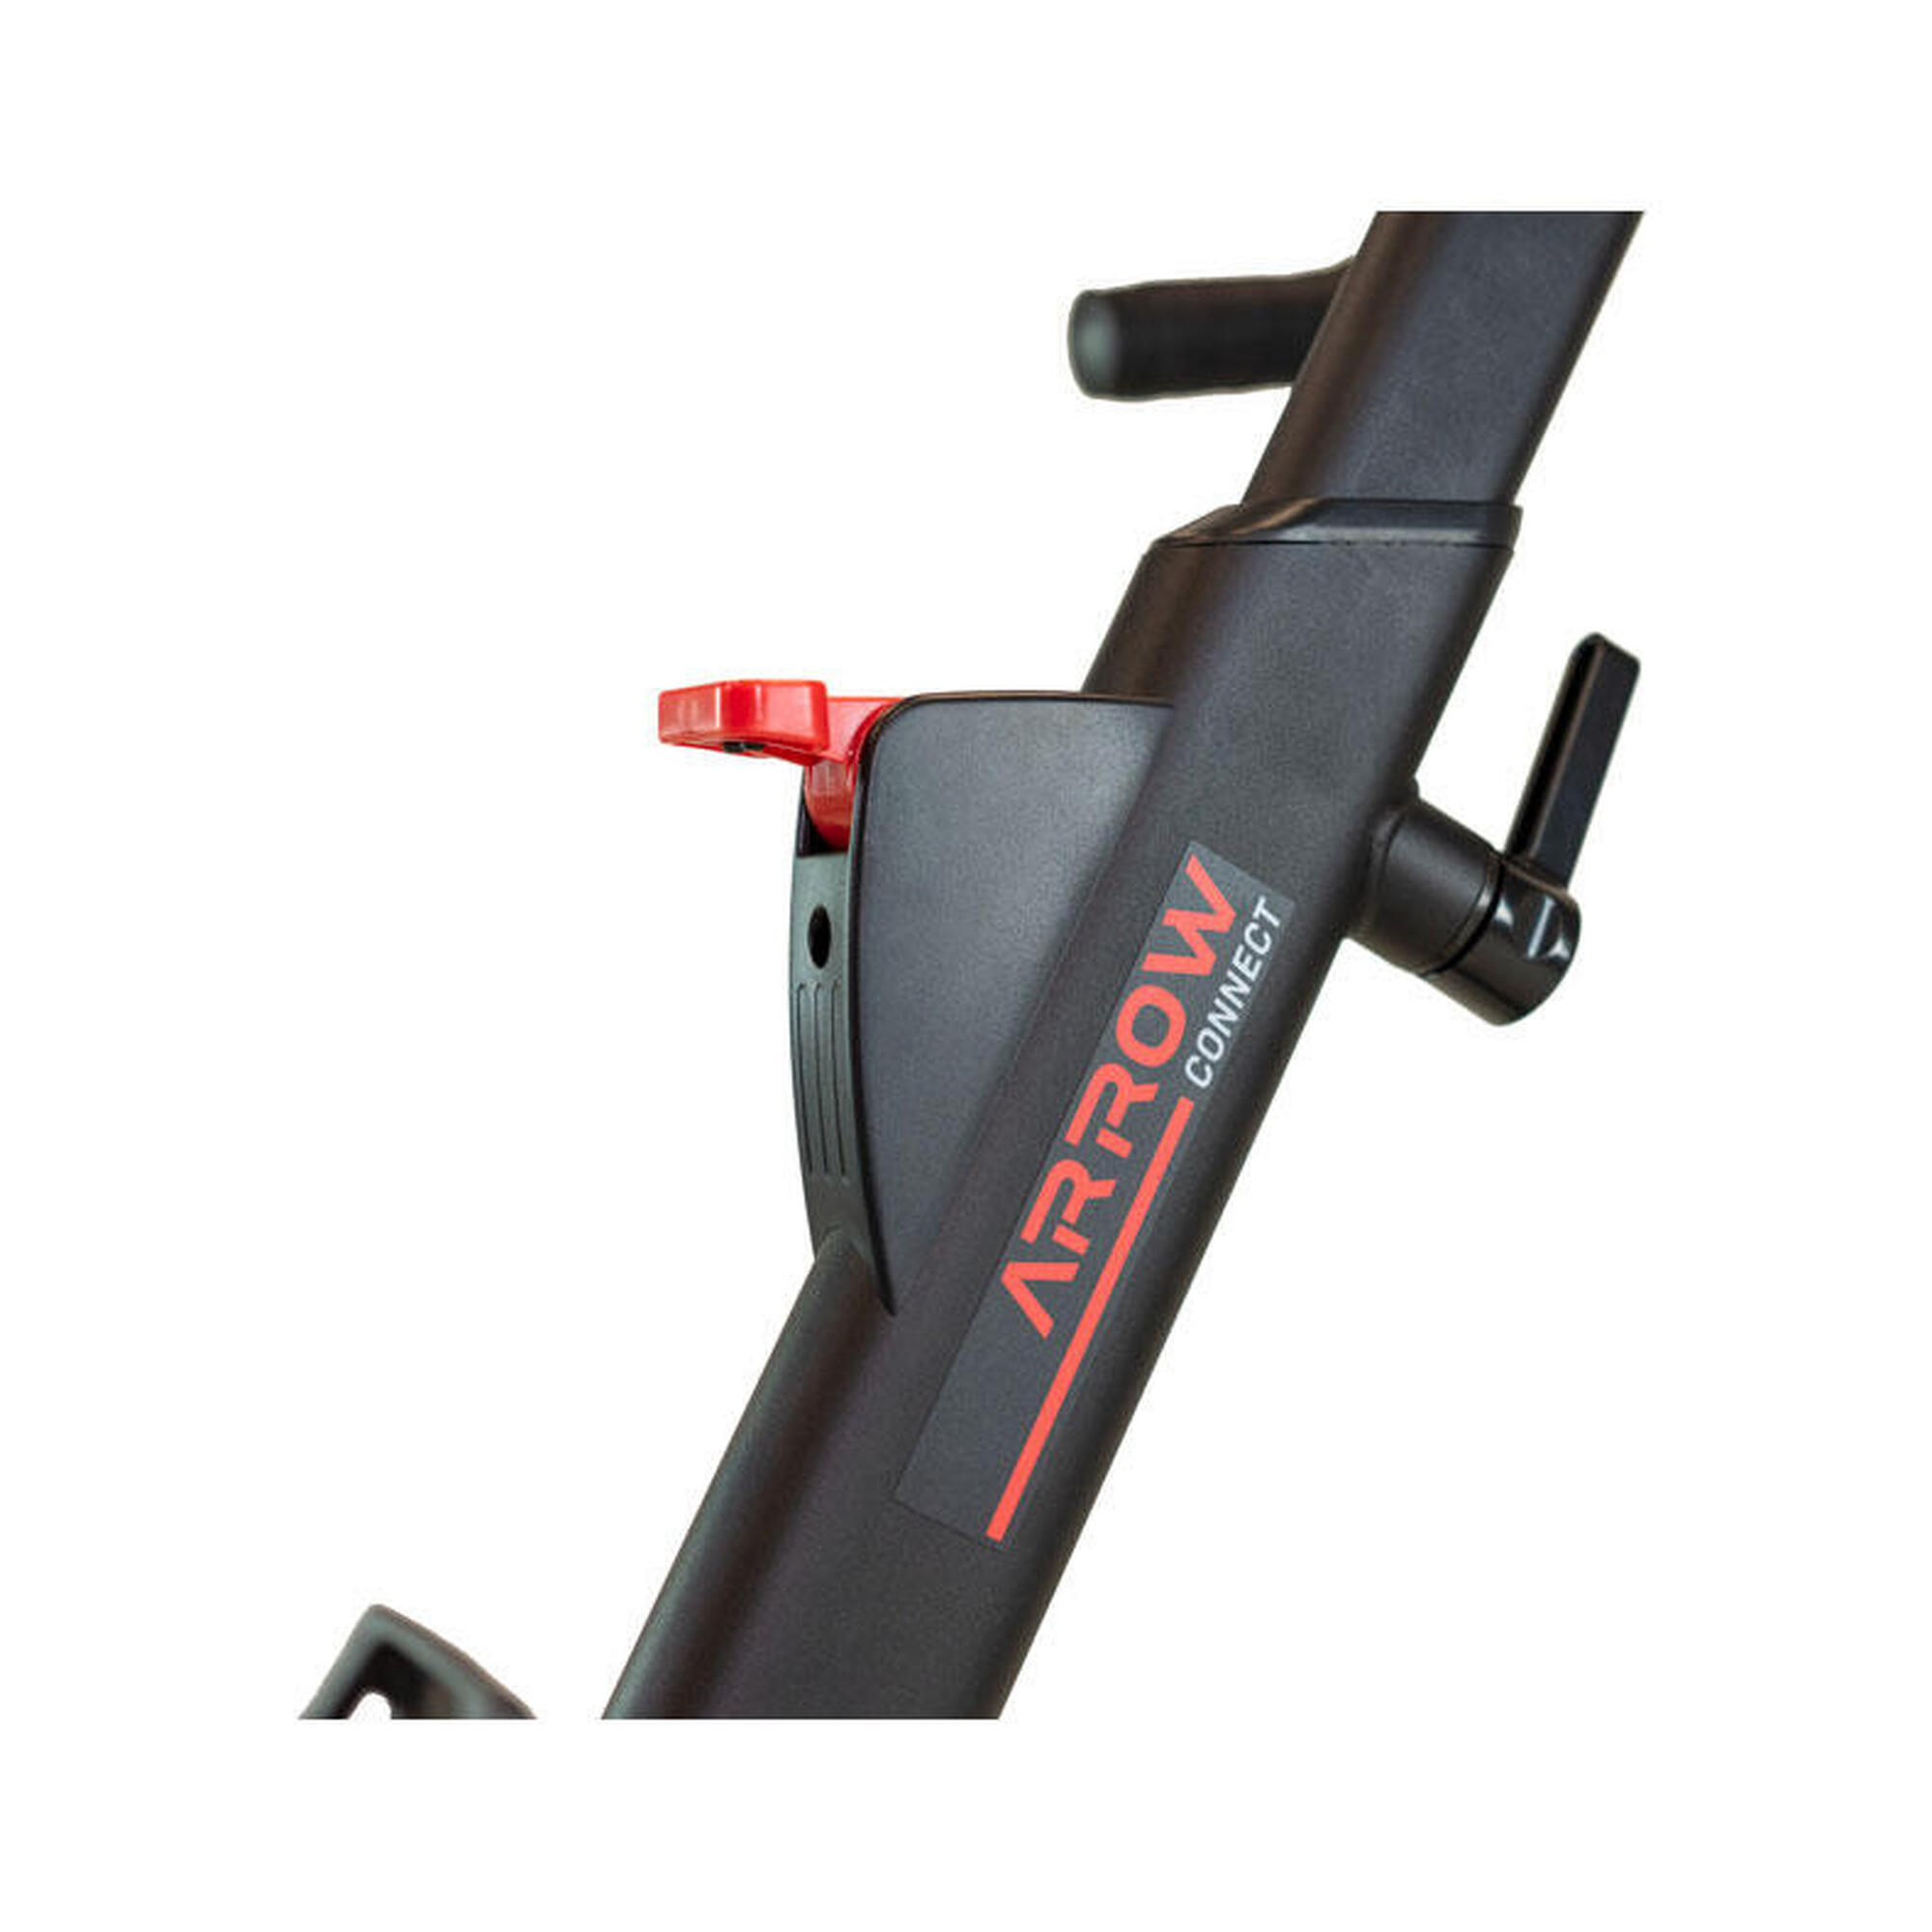 Smart Bike - Arrow Connect - Kinomap,Zwift,Trainerroad -Trägheit 16kg